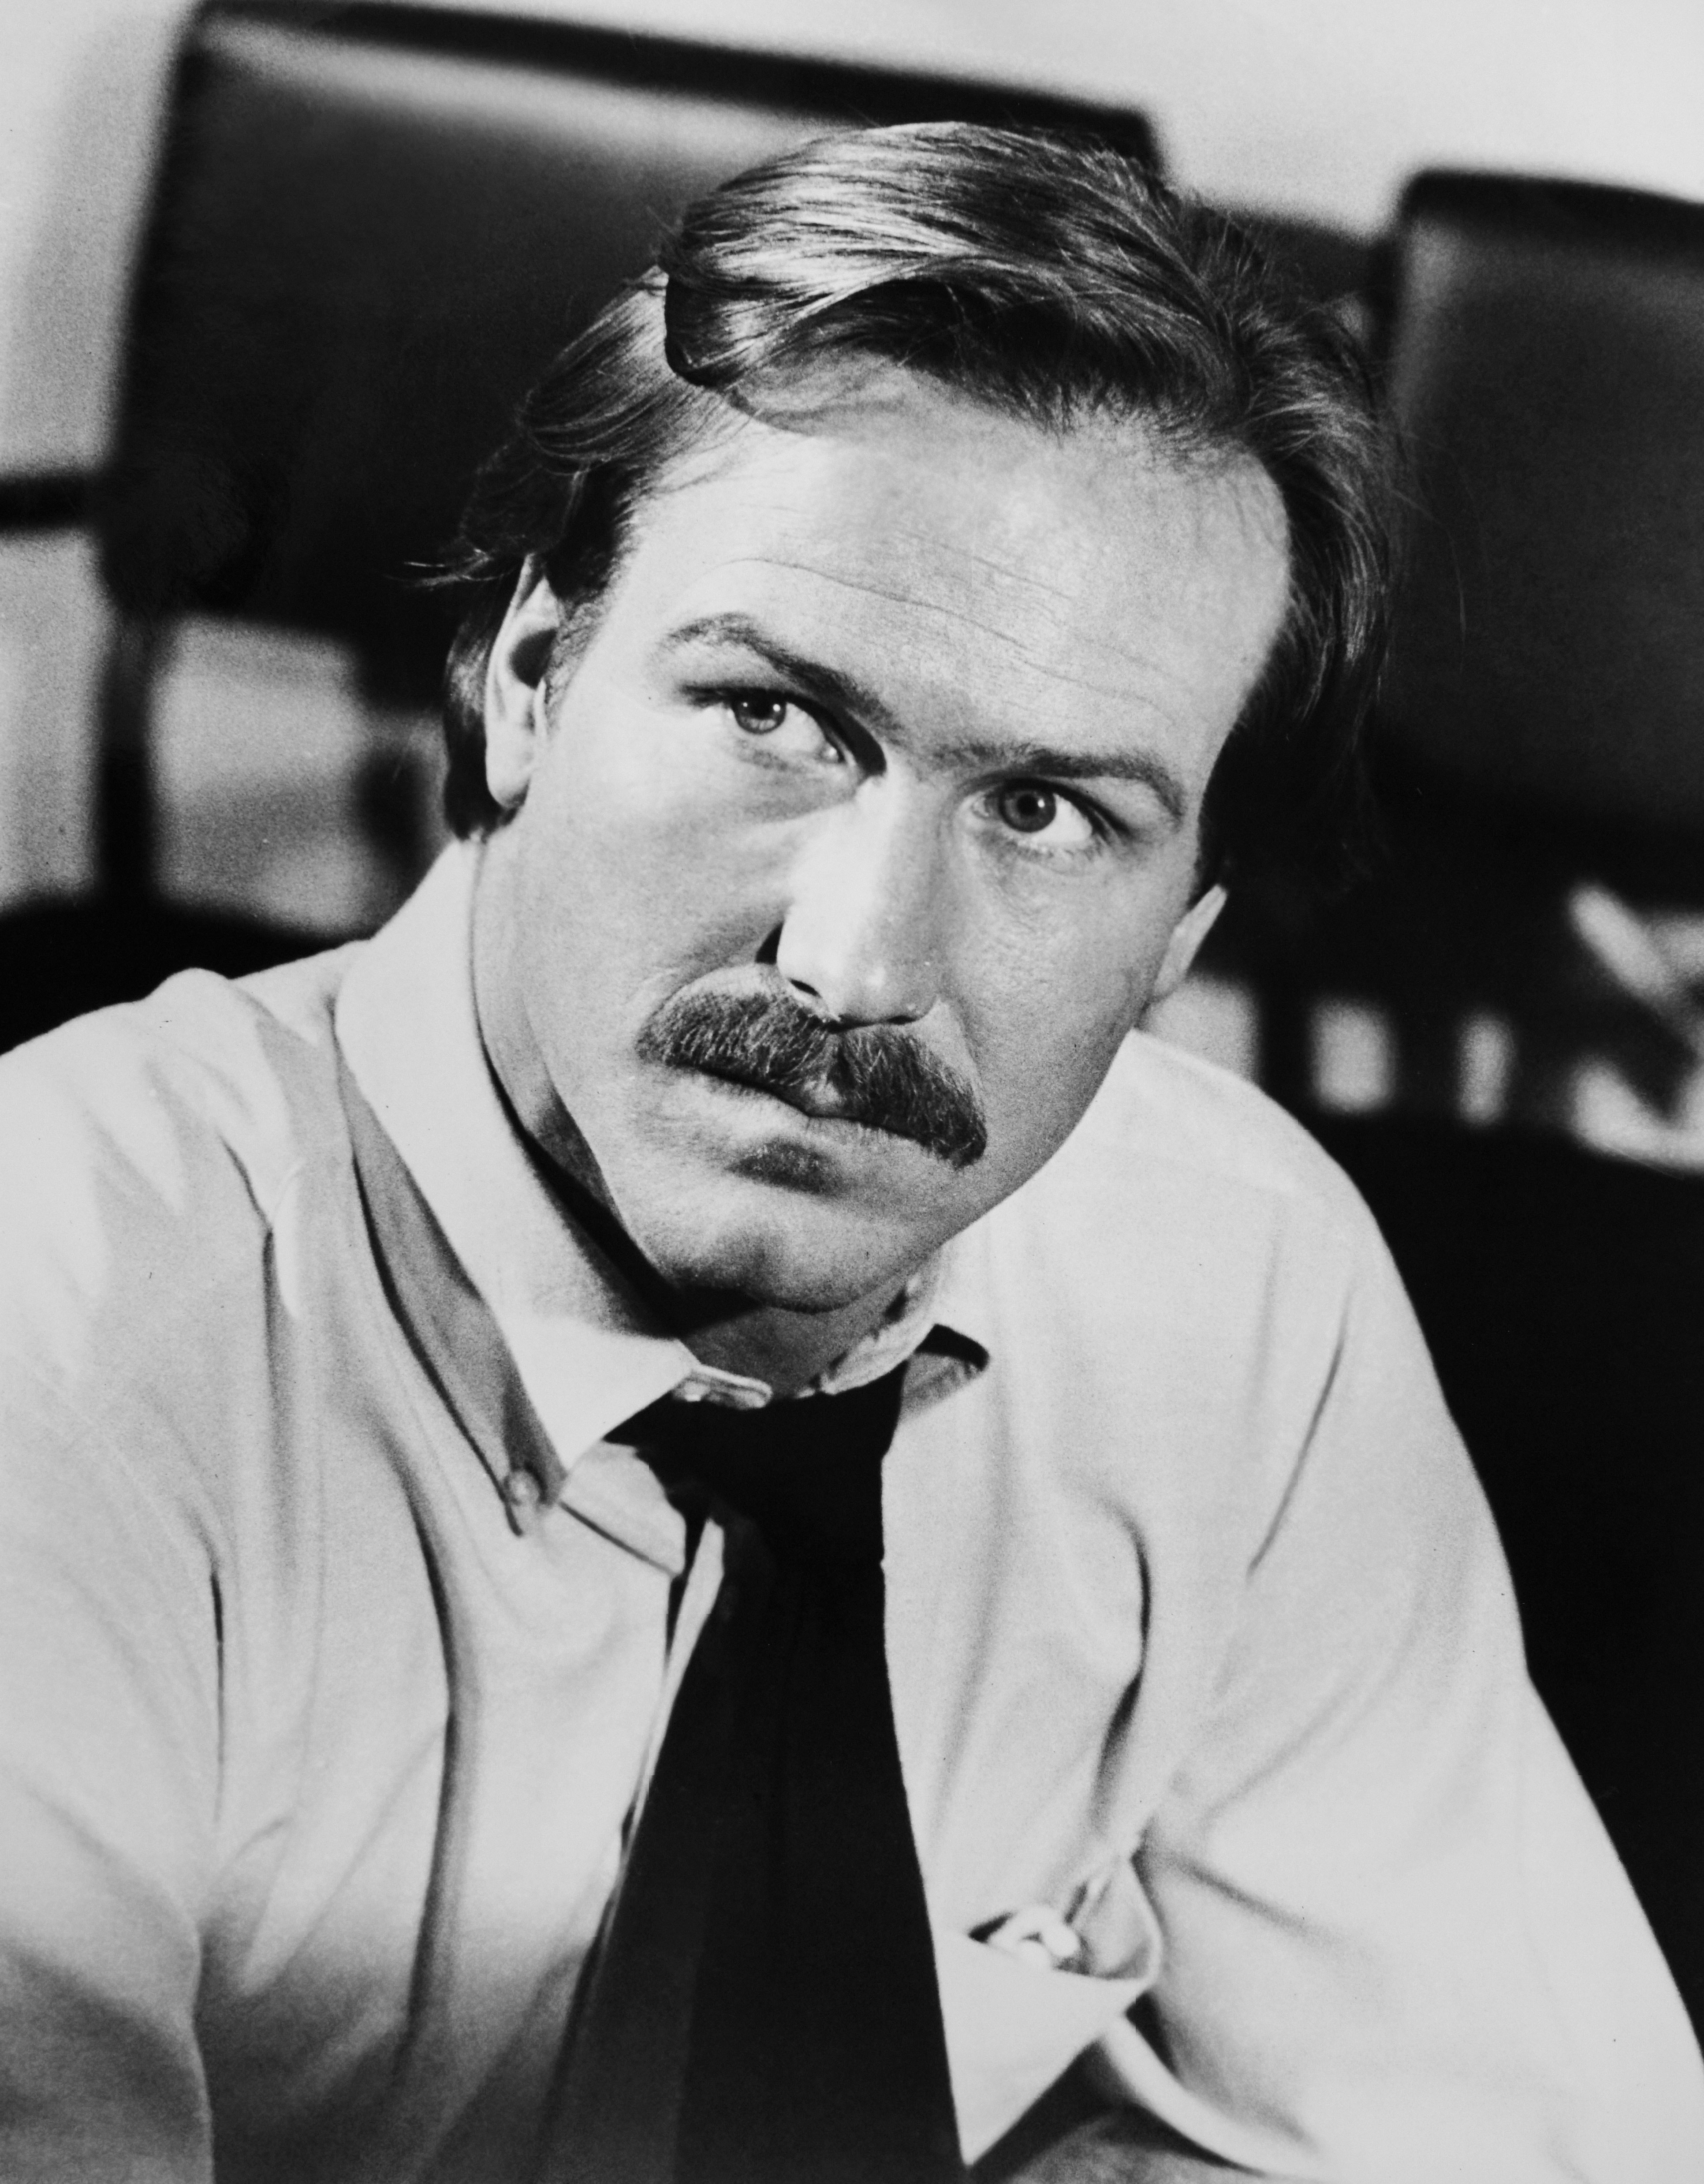 William Hurt in "Brivido caldo", 1981